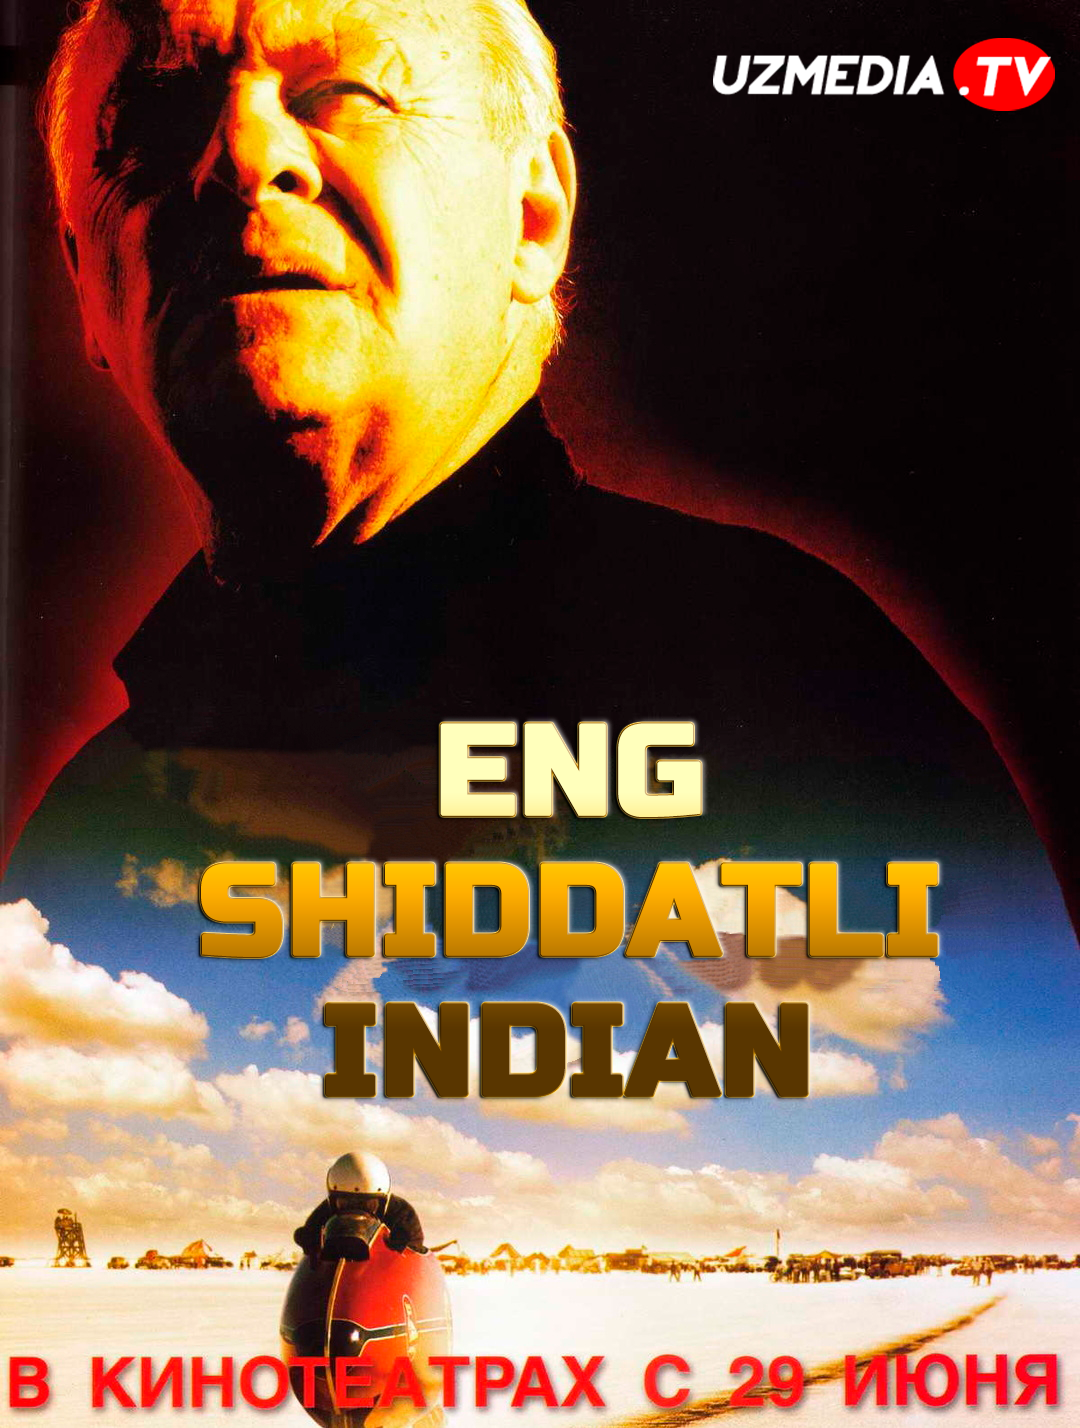 Eng shiddatli indian Uzbek tilida O'zbekcha 2005 tarjima kino Full HD skachat